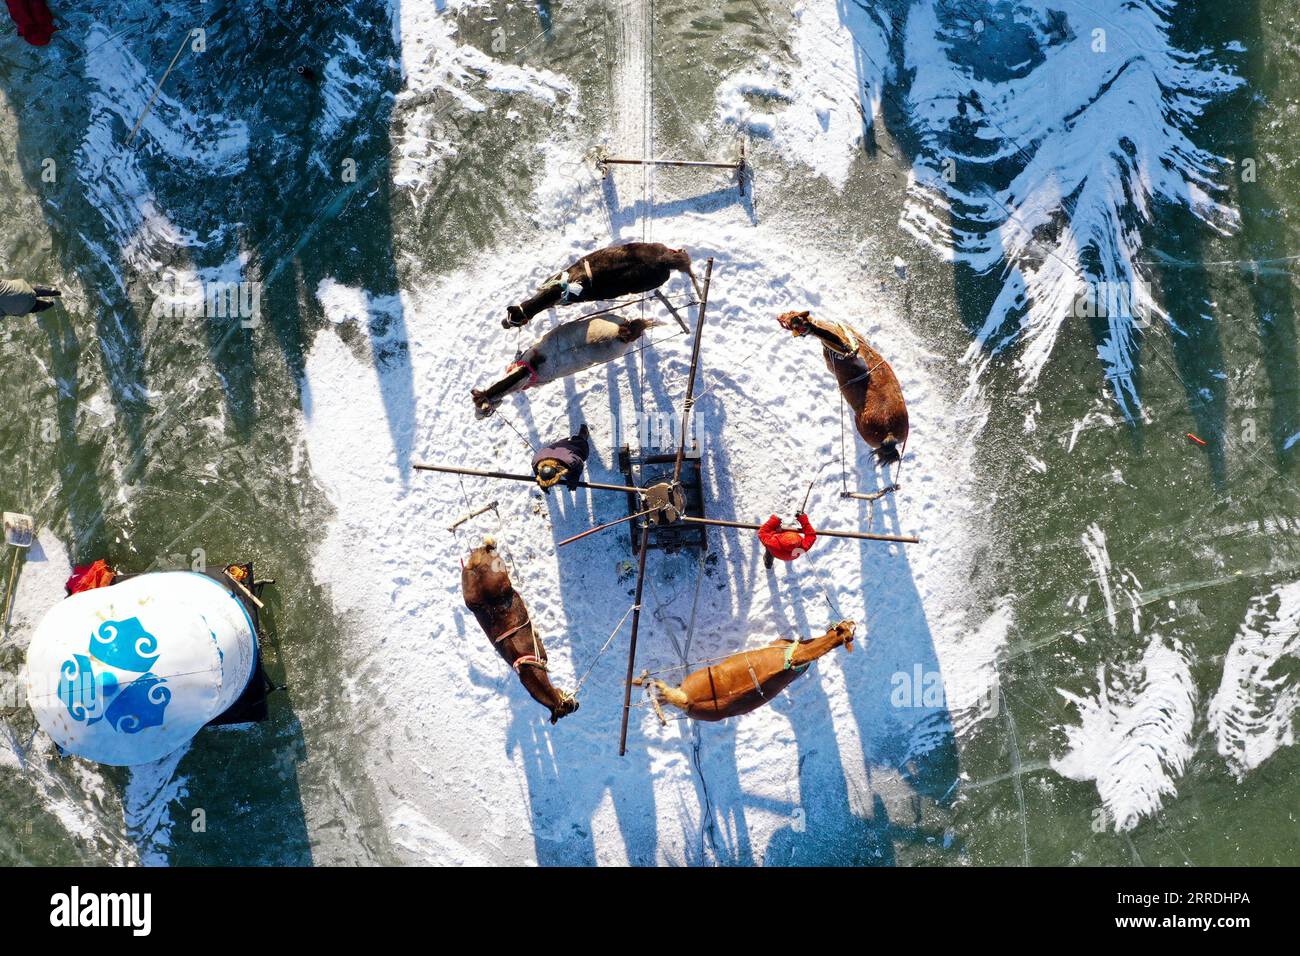 211227 -- SONGYUAN, 27 dicembre 2021 -- foto aerea scattata il 26 dicembre 2021 mostra i pescatori che catturano pesci sul lago Chagan nella città di Songyuan, nella provincia di Jilin della Cina nordorientale. Per secoli, pescatori e donne che vivono sul lago hanno mantenuto viva la tradizione della pesca sul ghiaccio -- perforando a mano attraverso il ghiaccio spesso e mettendo reti sotto per pescare. La tecnica è stata elencata come una forma a livello nazionale di patrimonio culturale immateriale. CHINA-JILIN-SONGYUAN-CHAGAN LAKE-WINTER FISHING CN YANXLINYUN PUBLICATIONXNOTXINXCHN Foto Stock